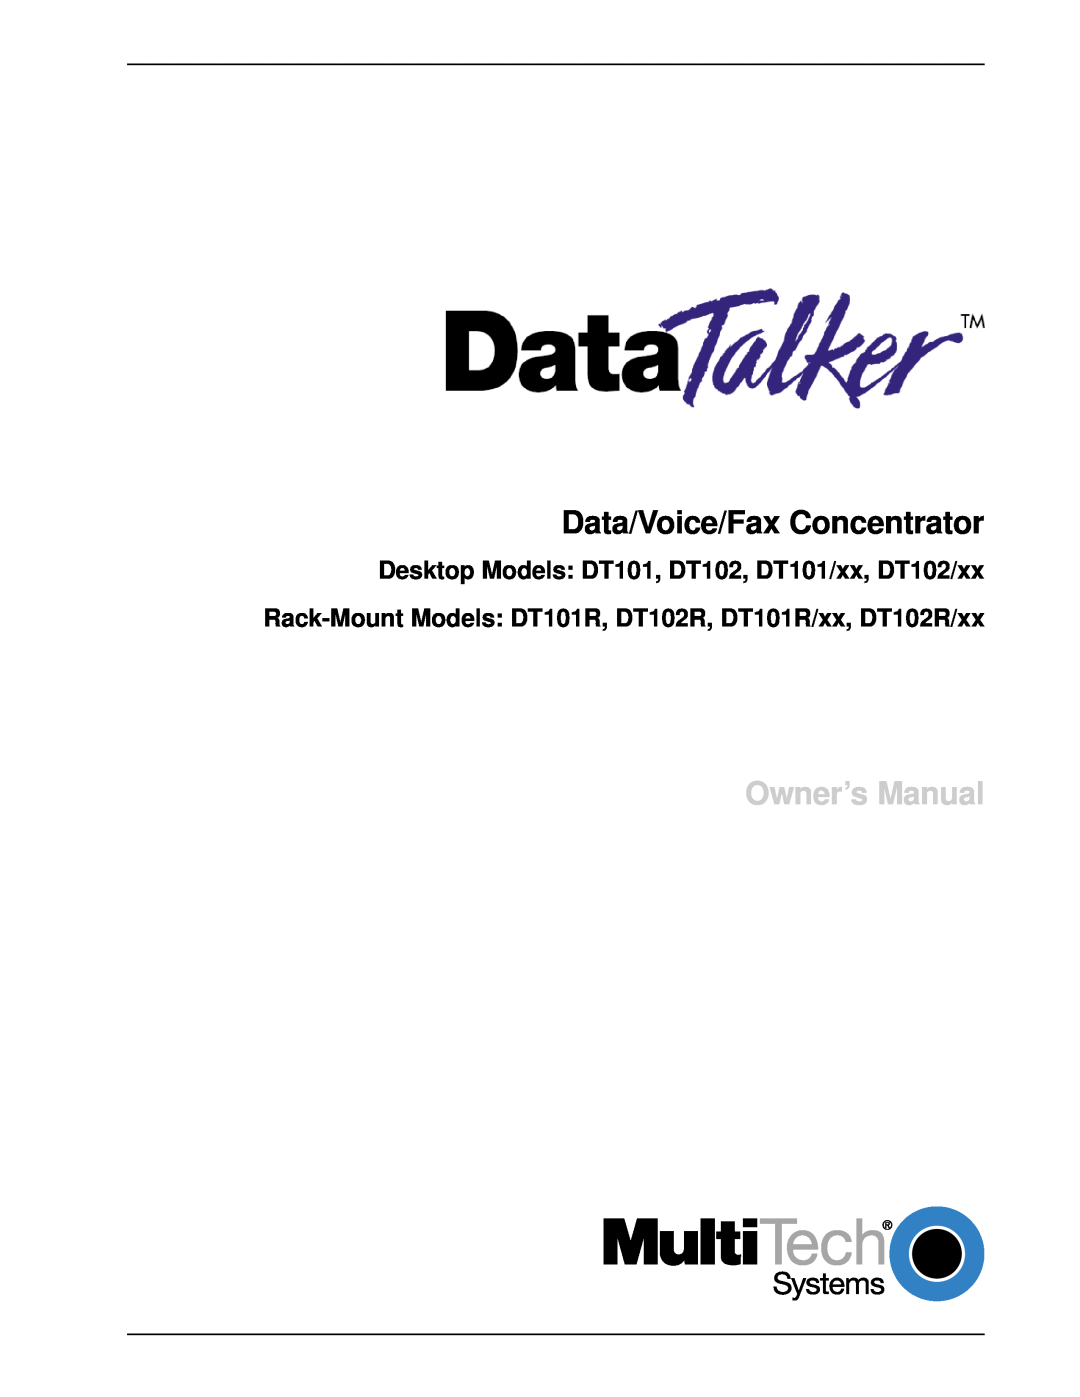 Multi-Tech Systems owner manual Data/Voice/Fax Concentrator, Desktop Models DT101, DT102, DT101/xx, DT102/xx 